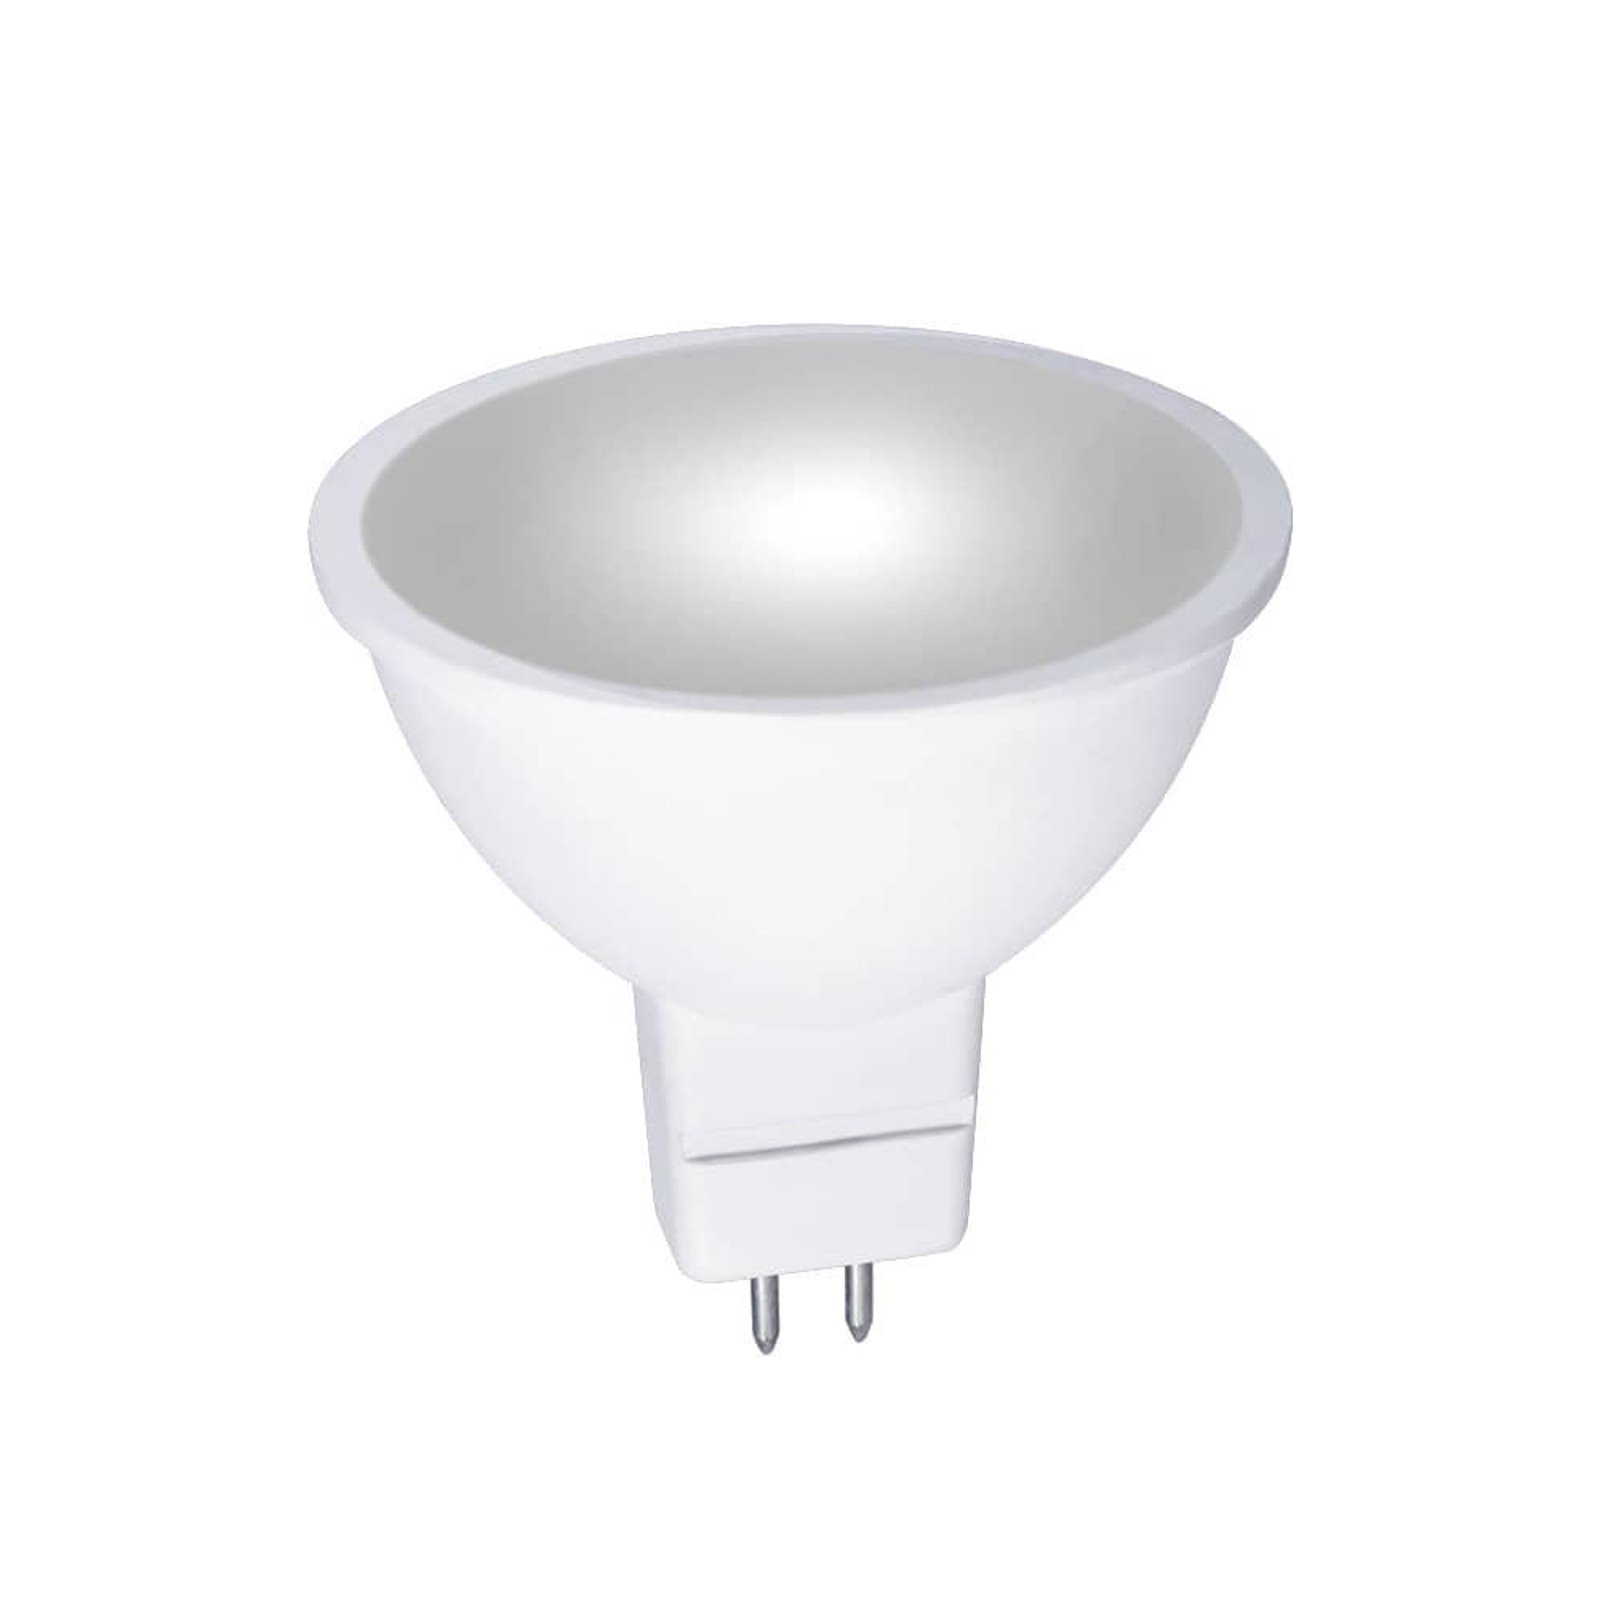 KADO reflector LED bulb, GU5.3, 7W 3,000K